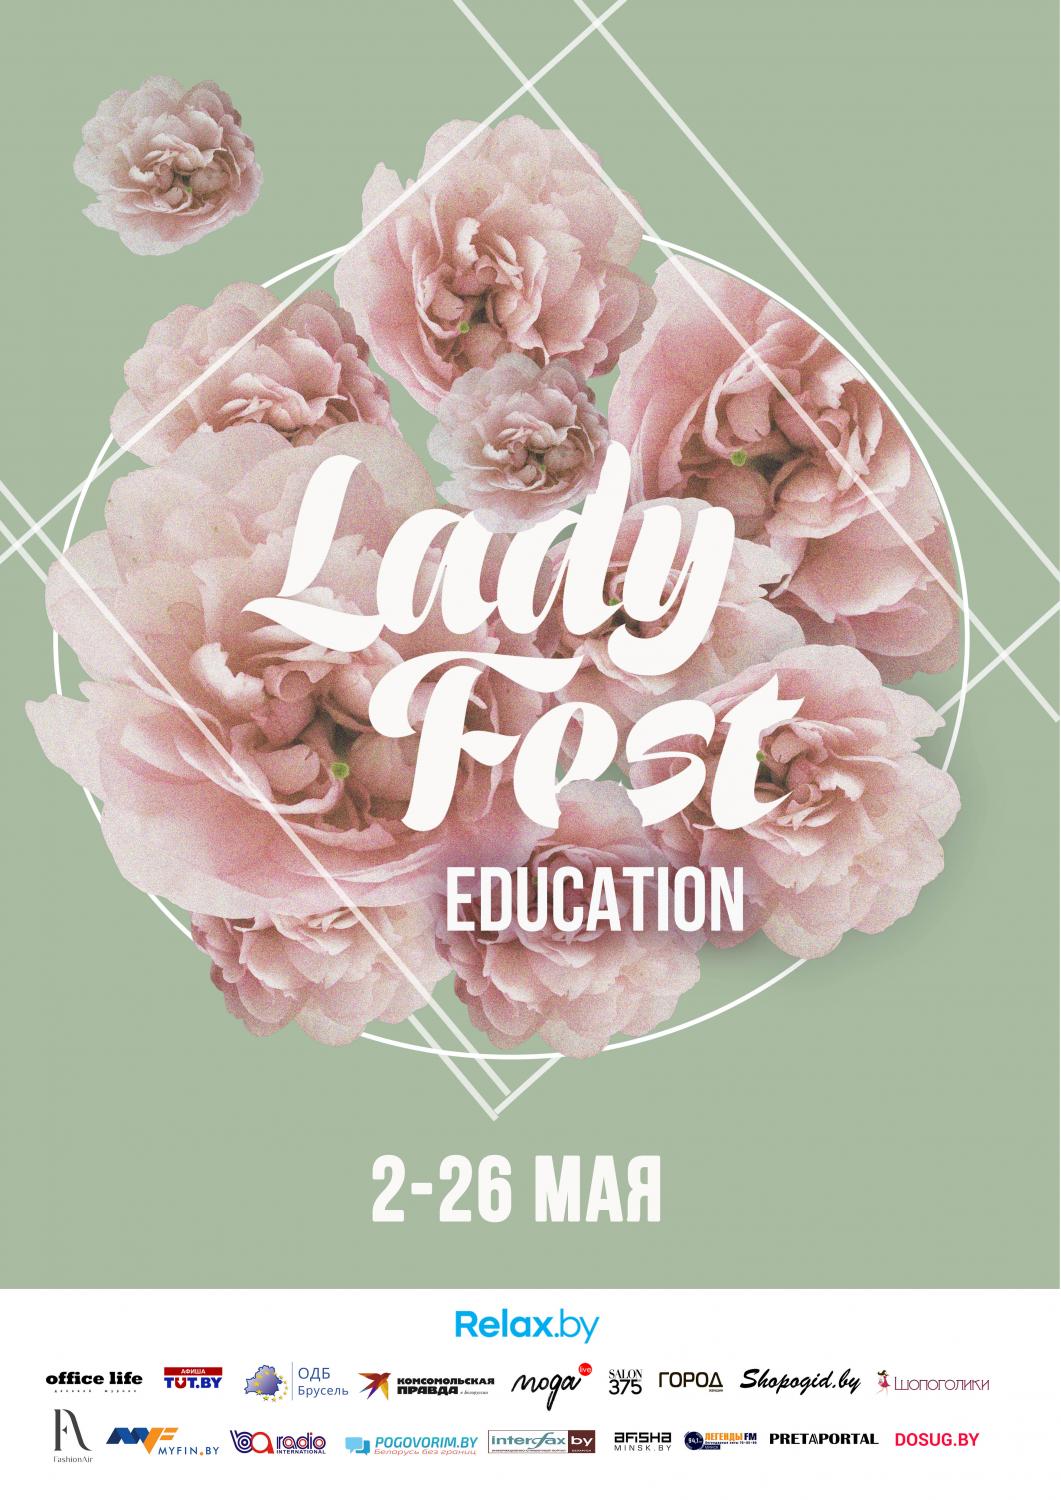 Lady Fest